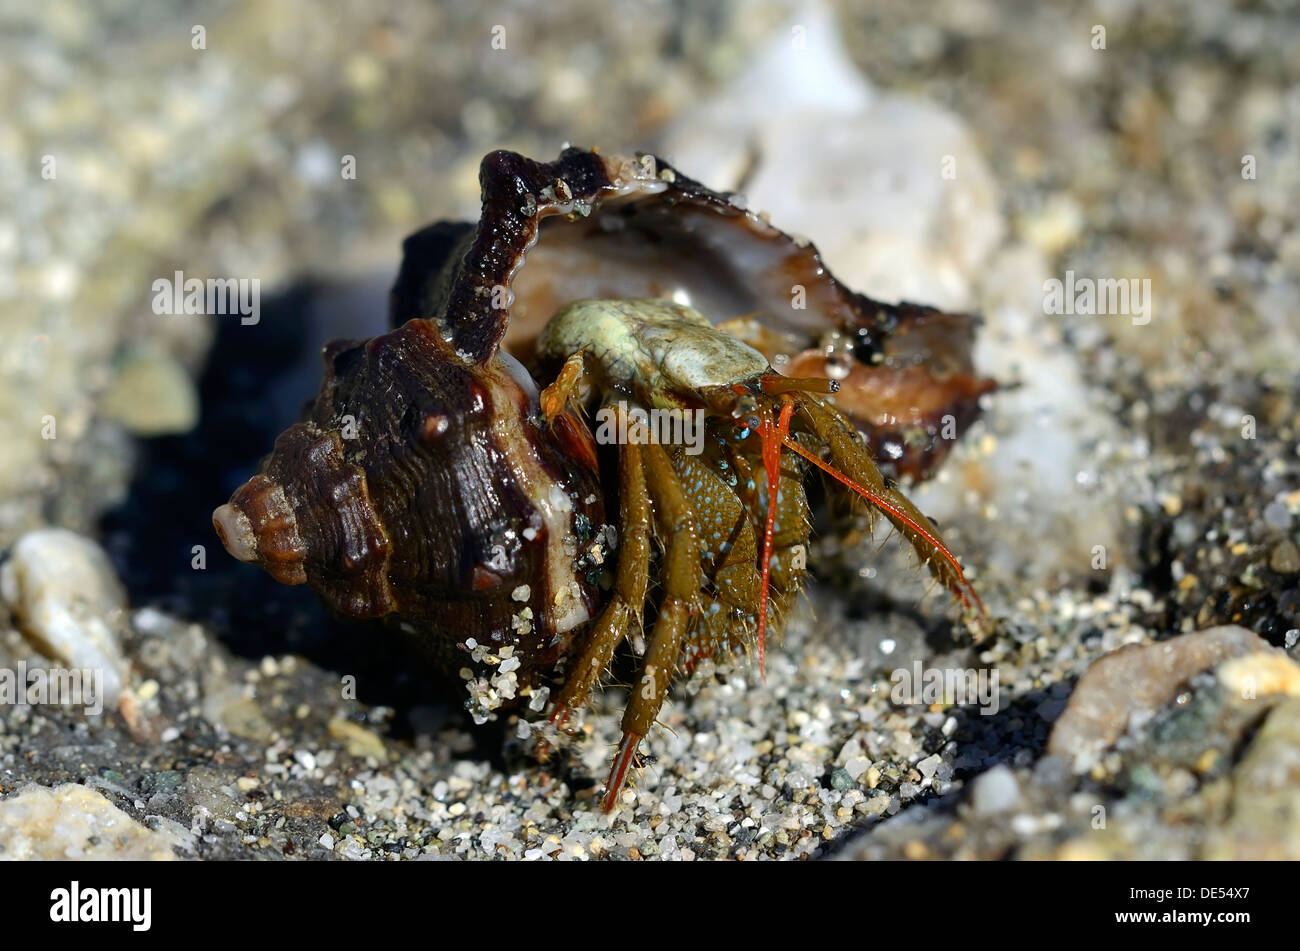 Gemeinsame marine Einsiedlerkrebs (pagurus bernhardus) aus der Schale, Küste in der Nähe von Corte, Korsika, Frankreich, Europa Stockfoto